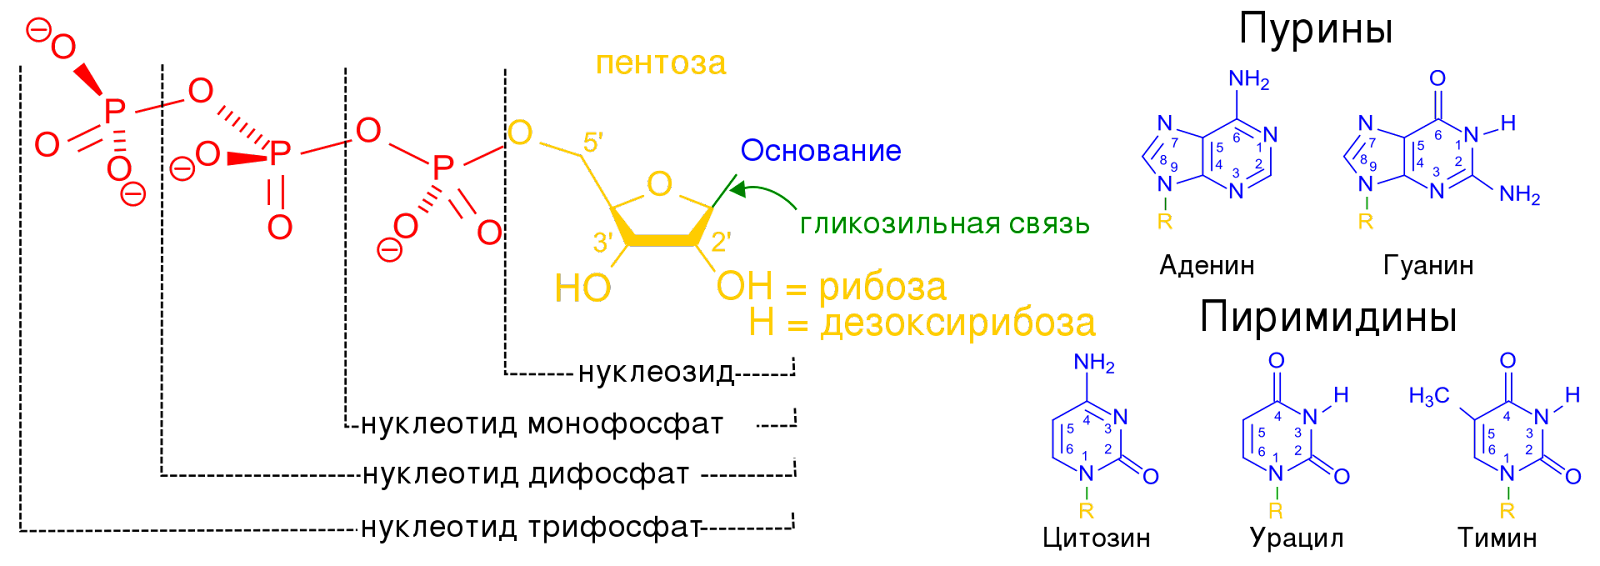 Строение нуклеотидов. 
Источник: https://upload.wikimedia.org/wikipedia/commons/thumb/6/61/Nucleotides.RU.1.svg/1920px-Nucleotides.RU.1.svg.png